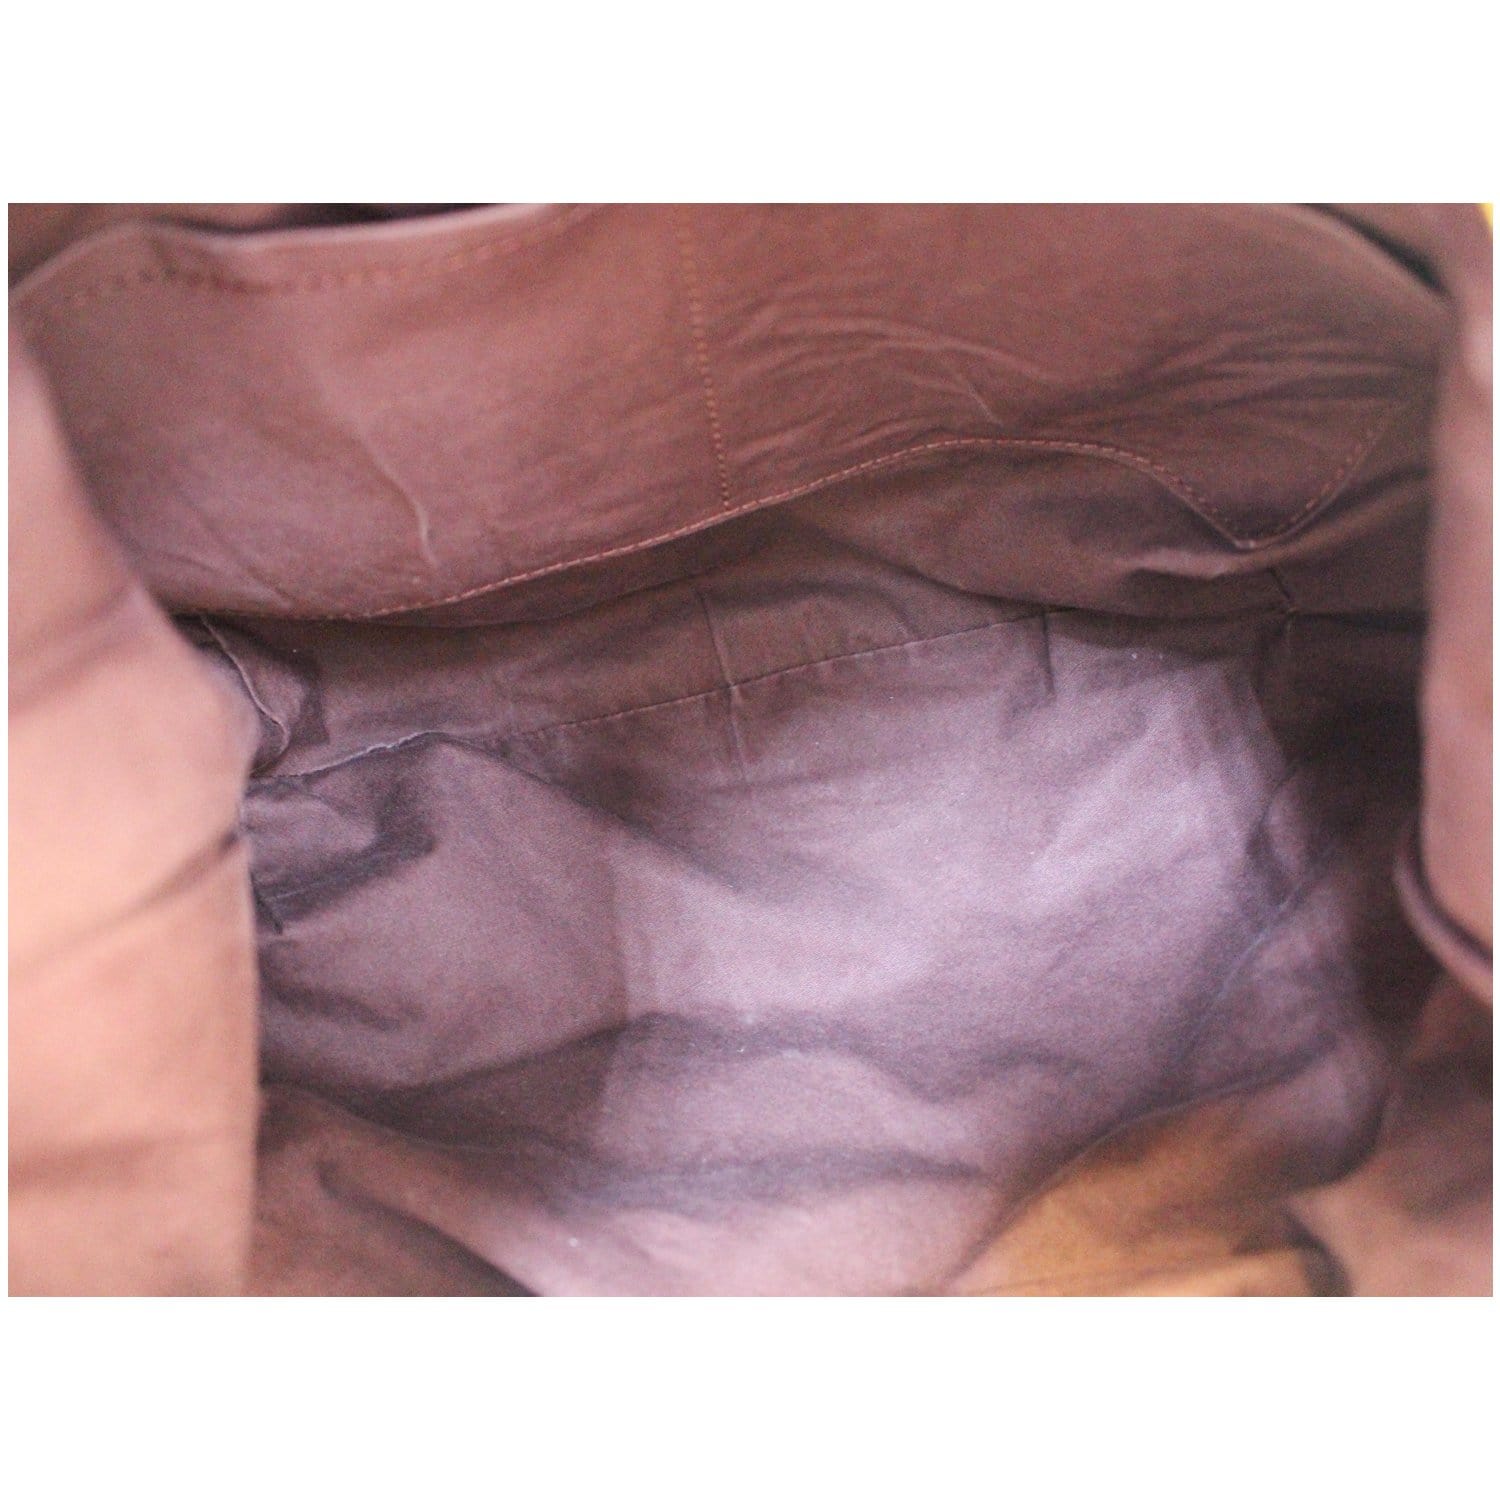 Shop Louis Vuitton Shoulder Bags (M51631) by HOPE